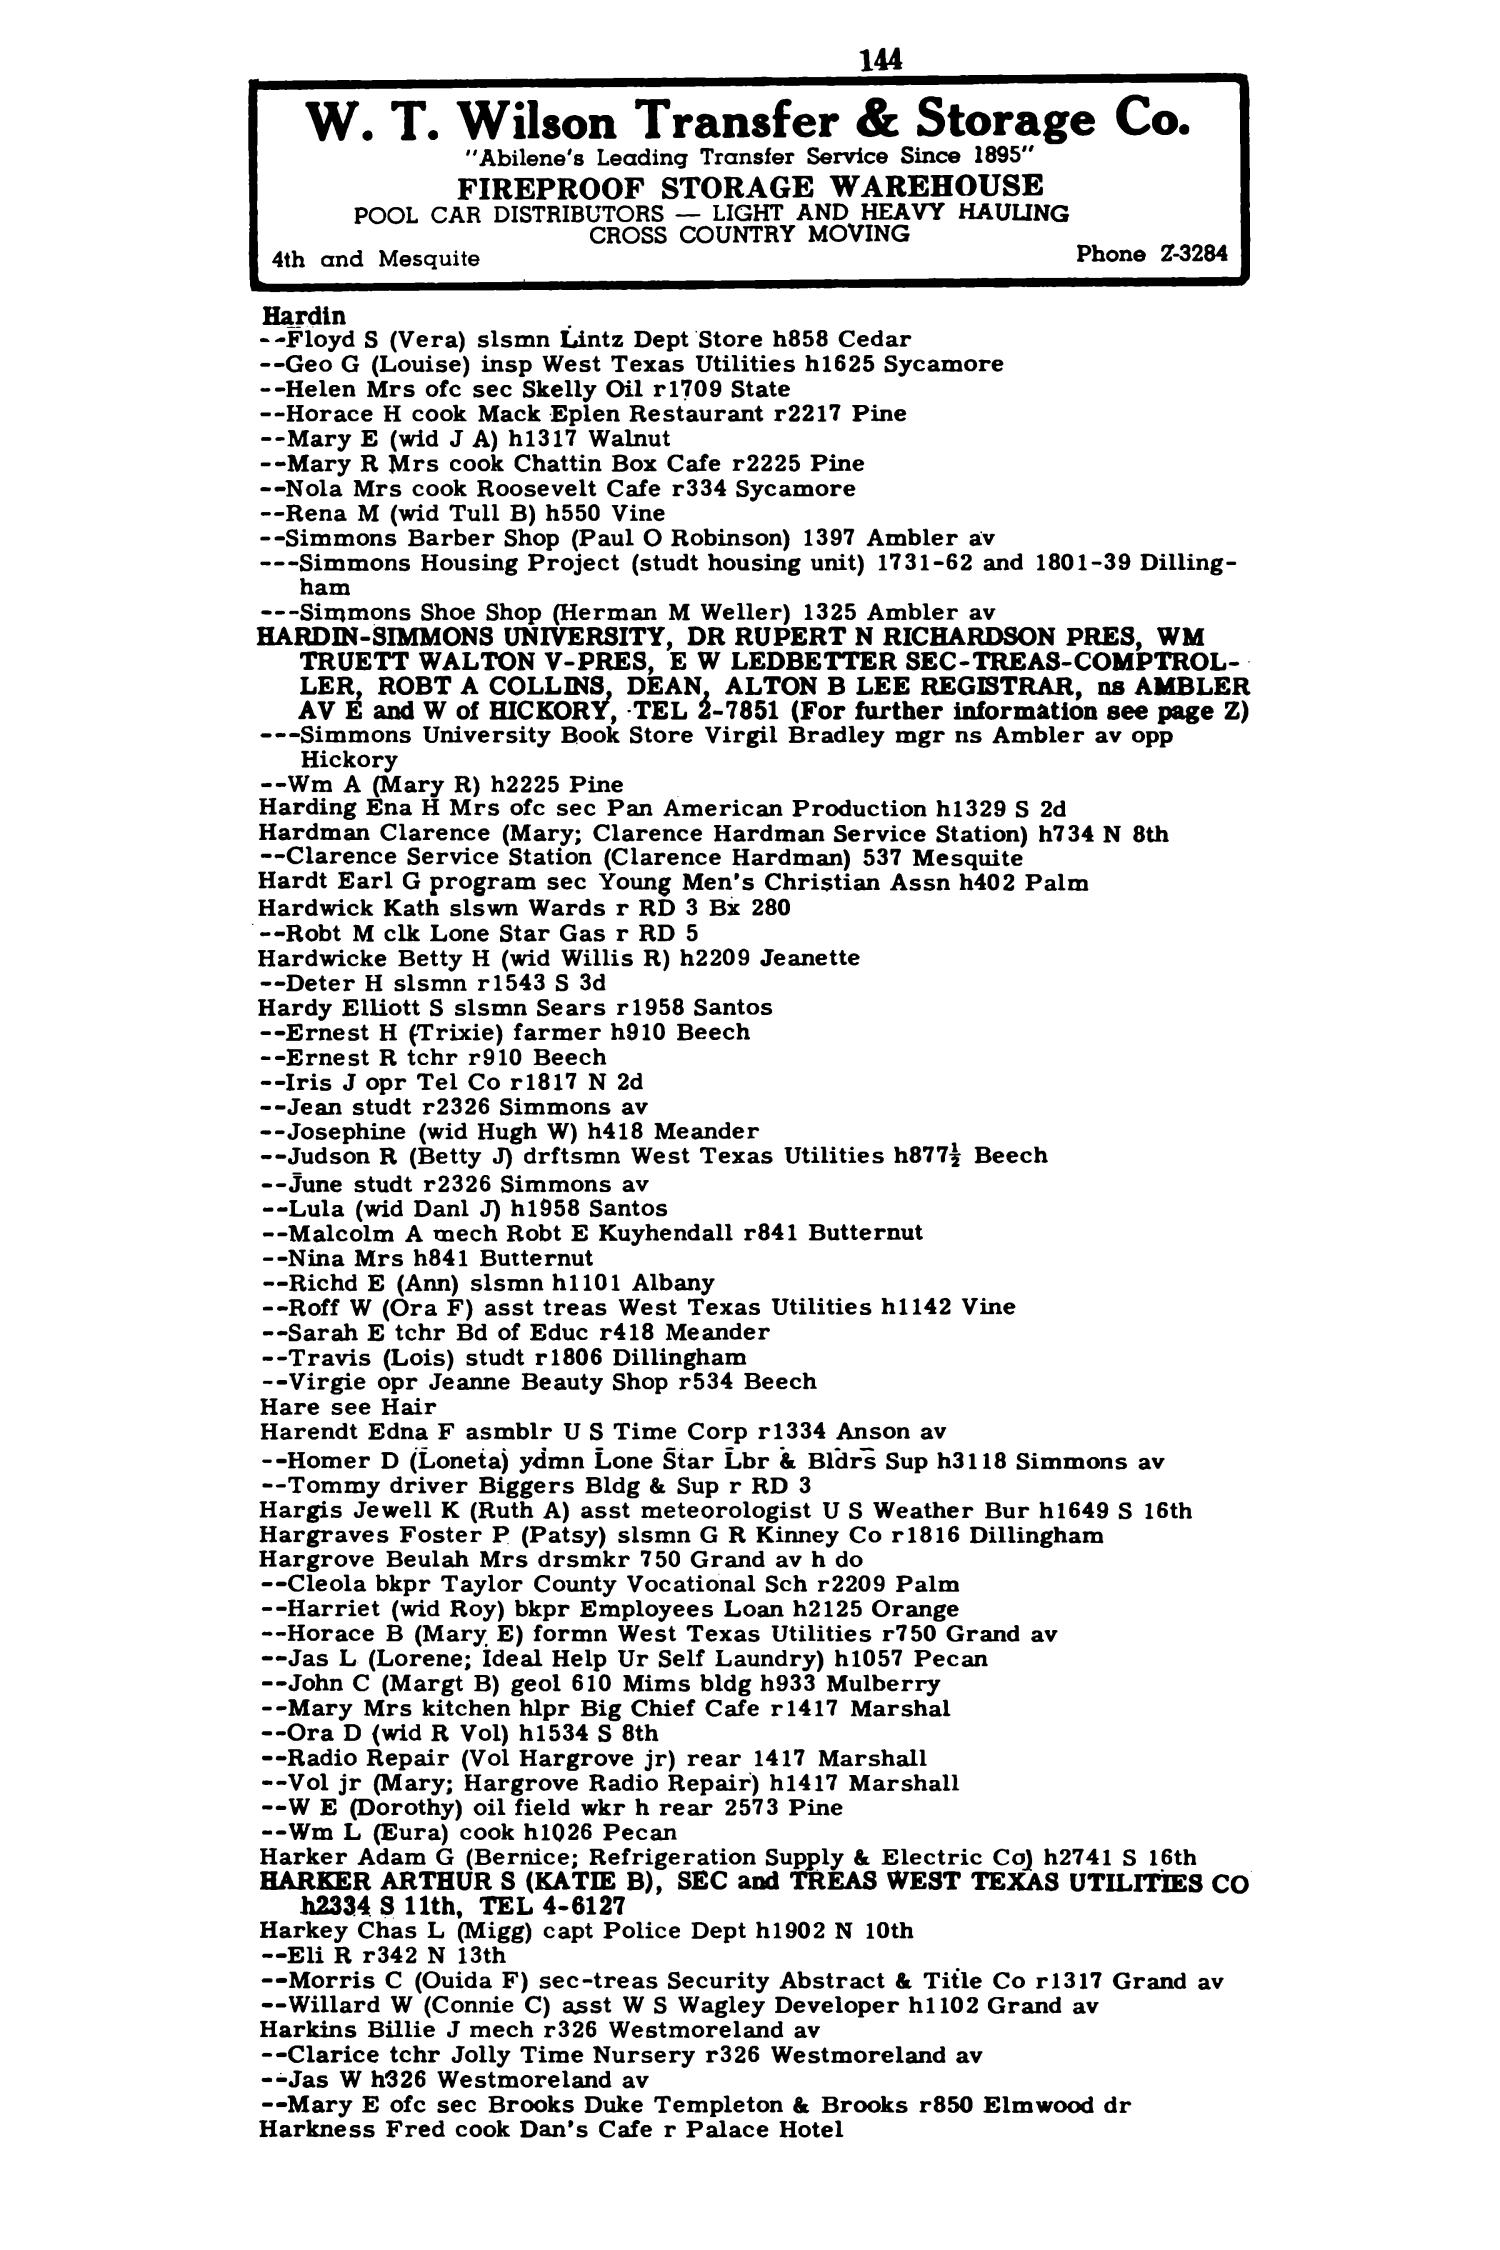 Worley's Abilene (Taylor County, Texas) City Directory, 1951
                                                
                                                    144
                                                